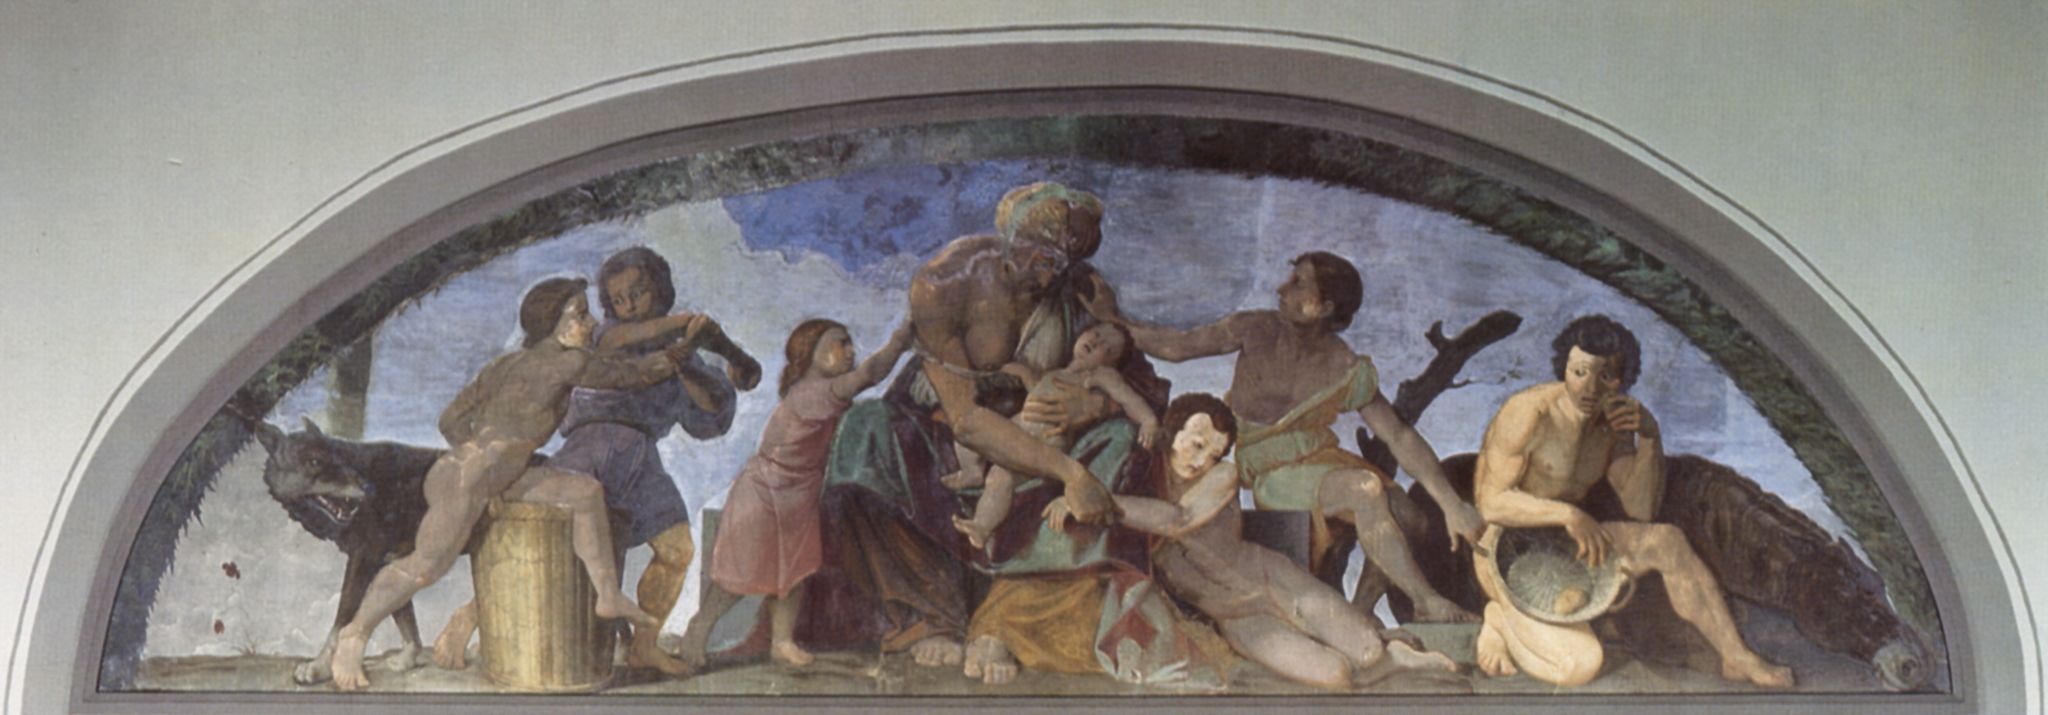 Friedrich Overbeck: Freskenzyklus des Casa Bartholdy in Rom, Szene: Die sieben mageren Jahre